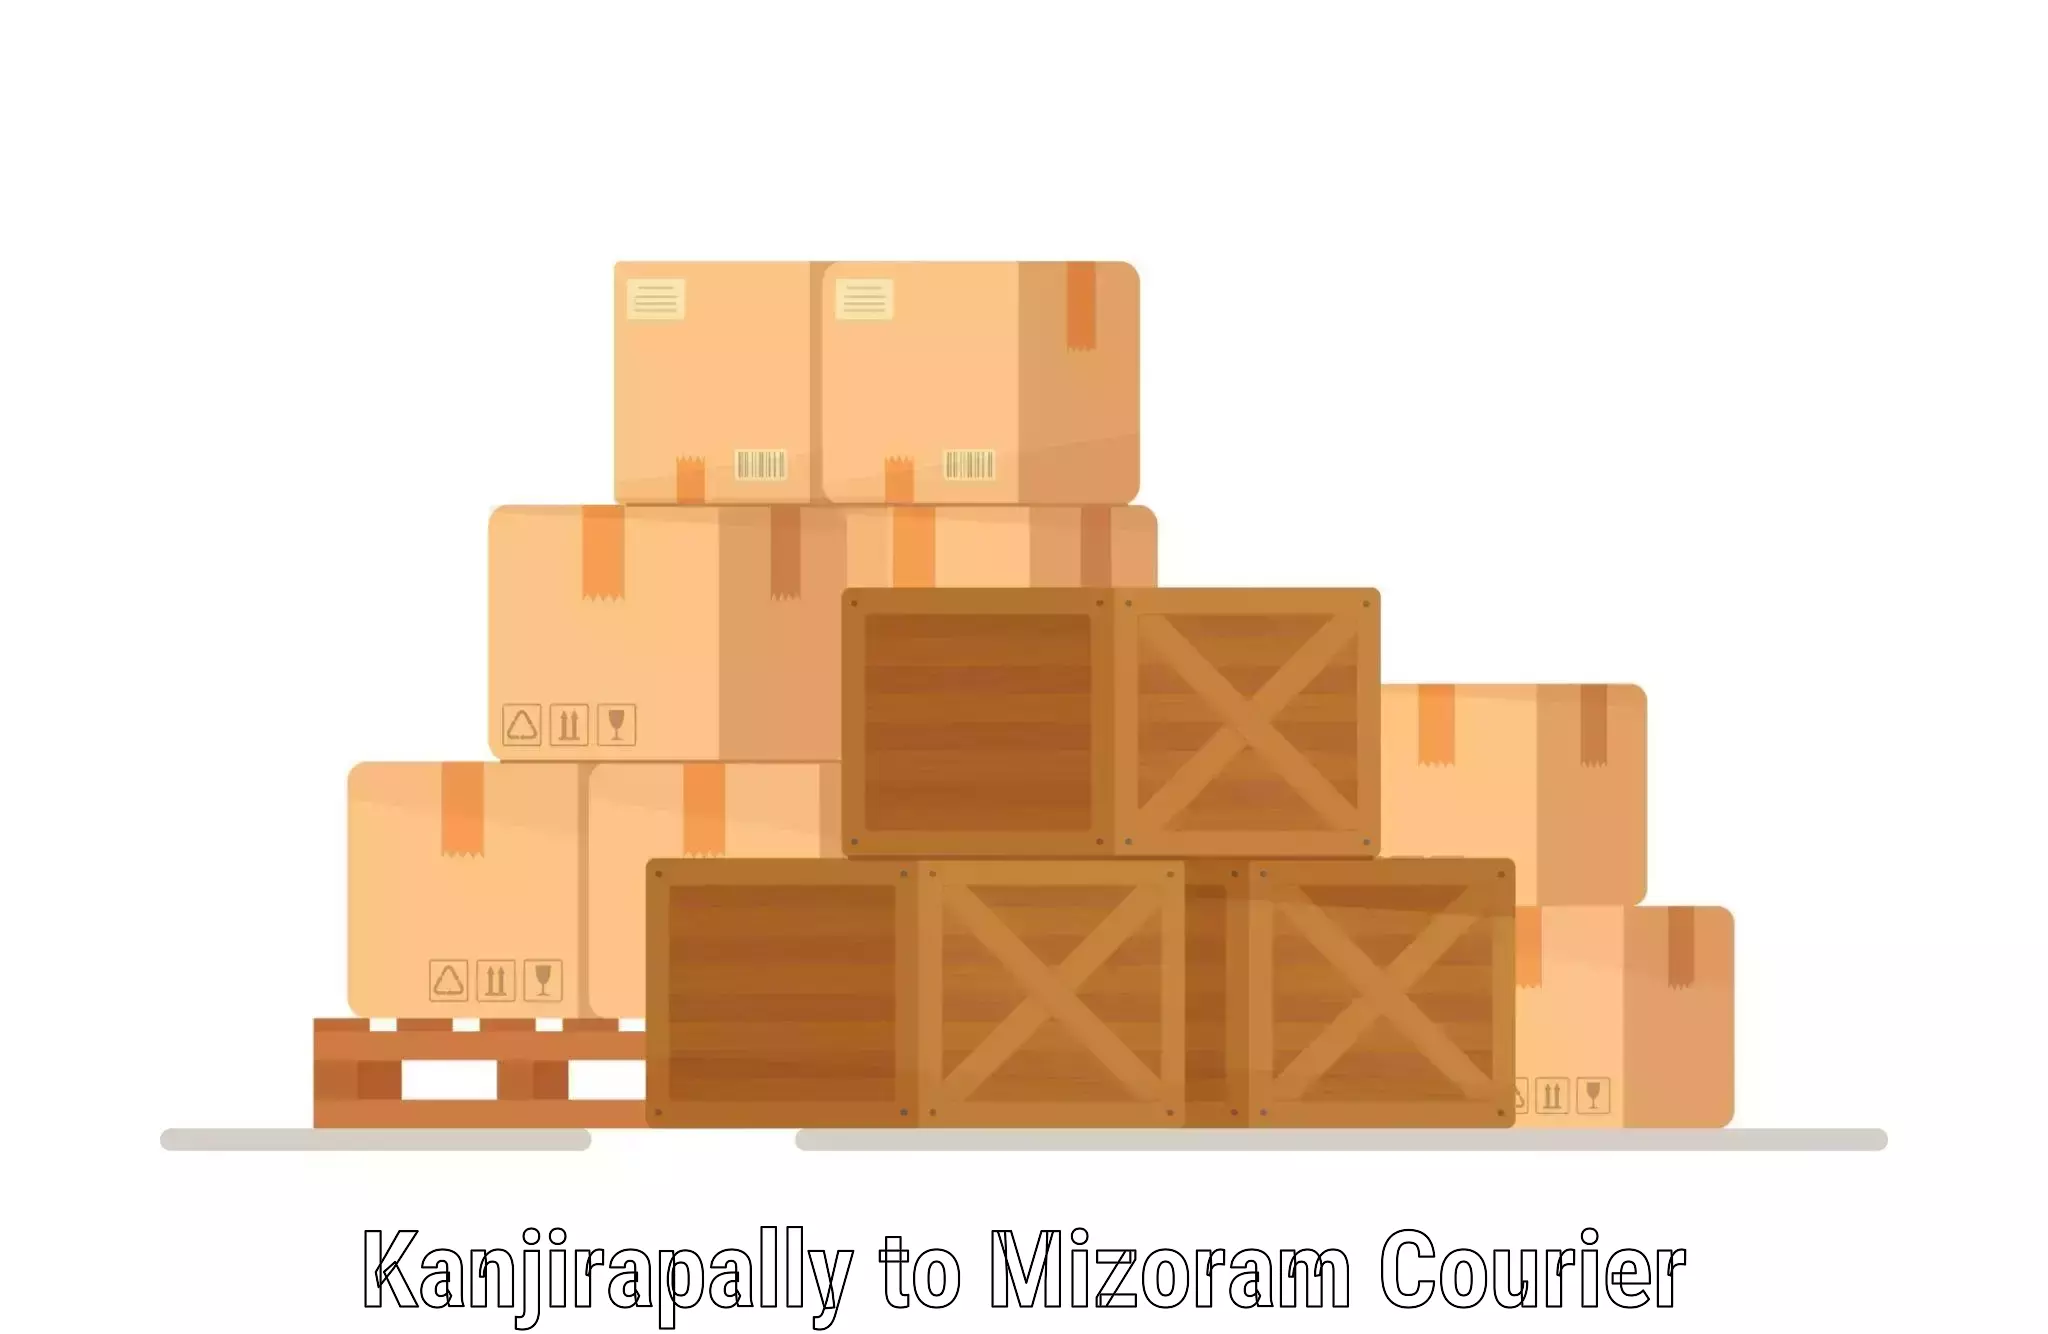 Modern delivery methods in Kanjirapally to Mizoram